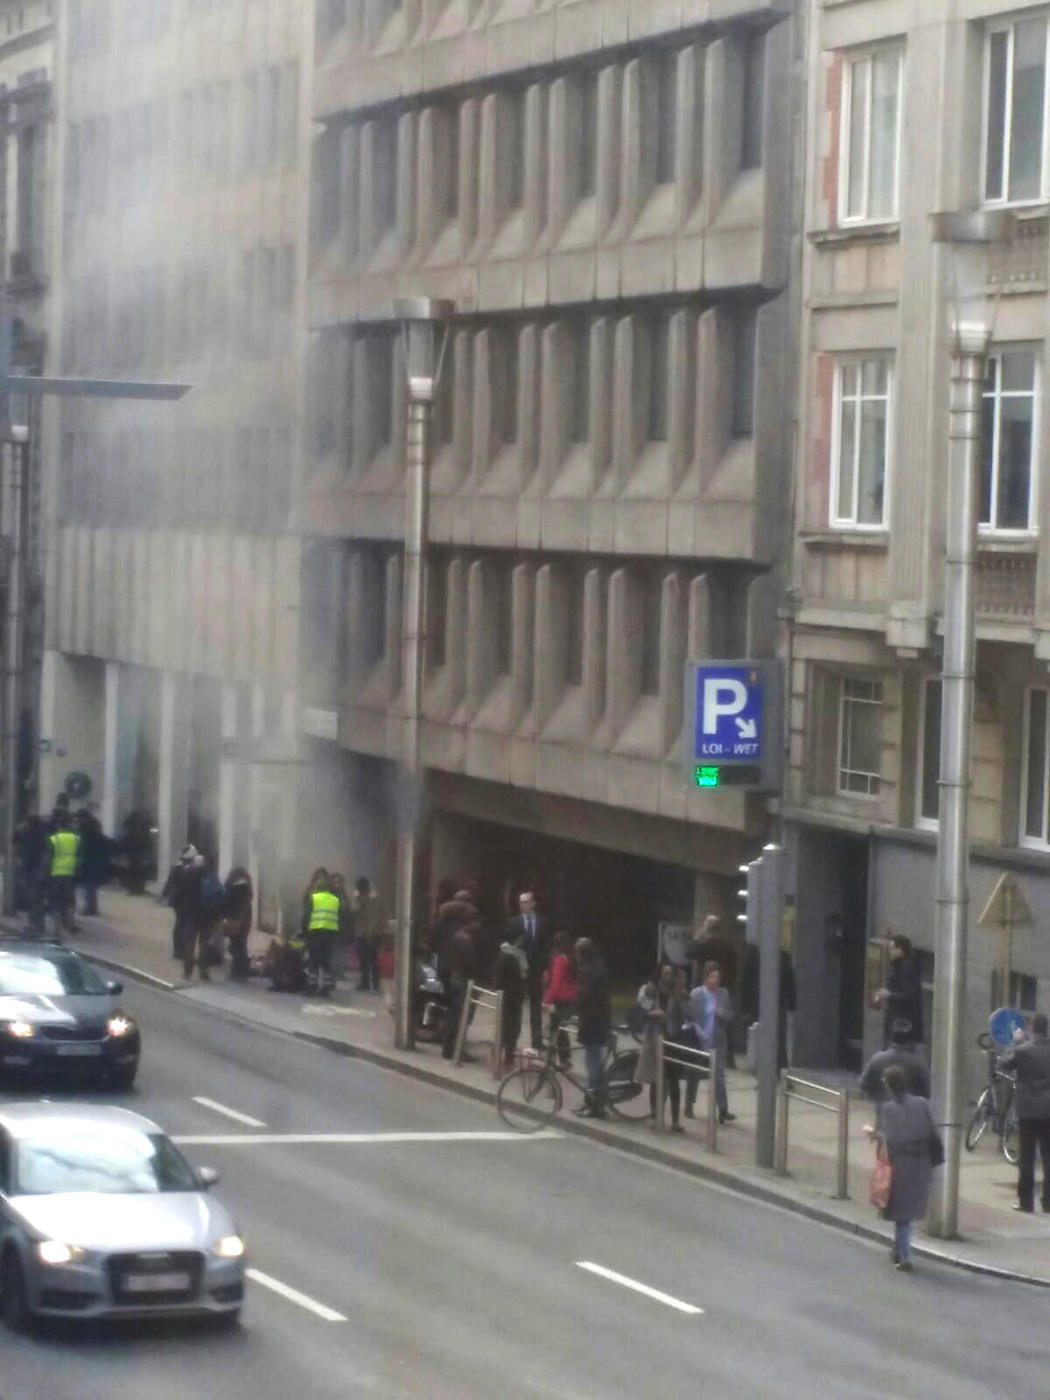 Tercera bomba en el metro de Bruselas